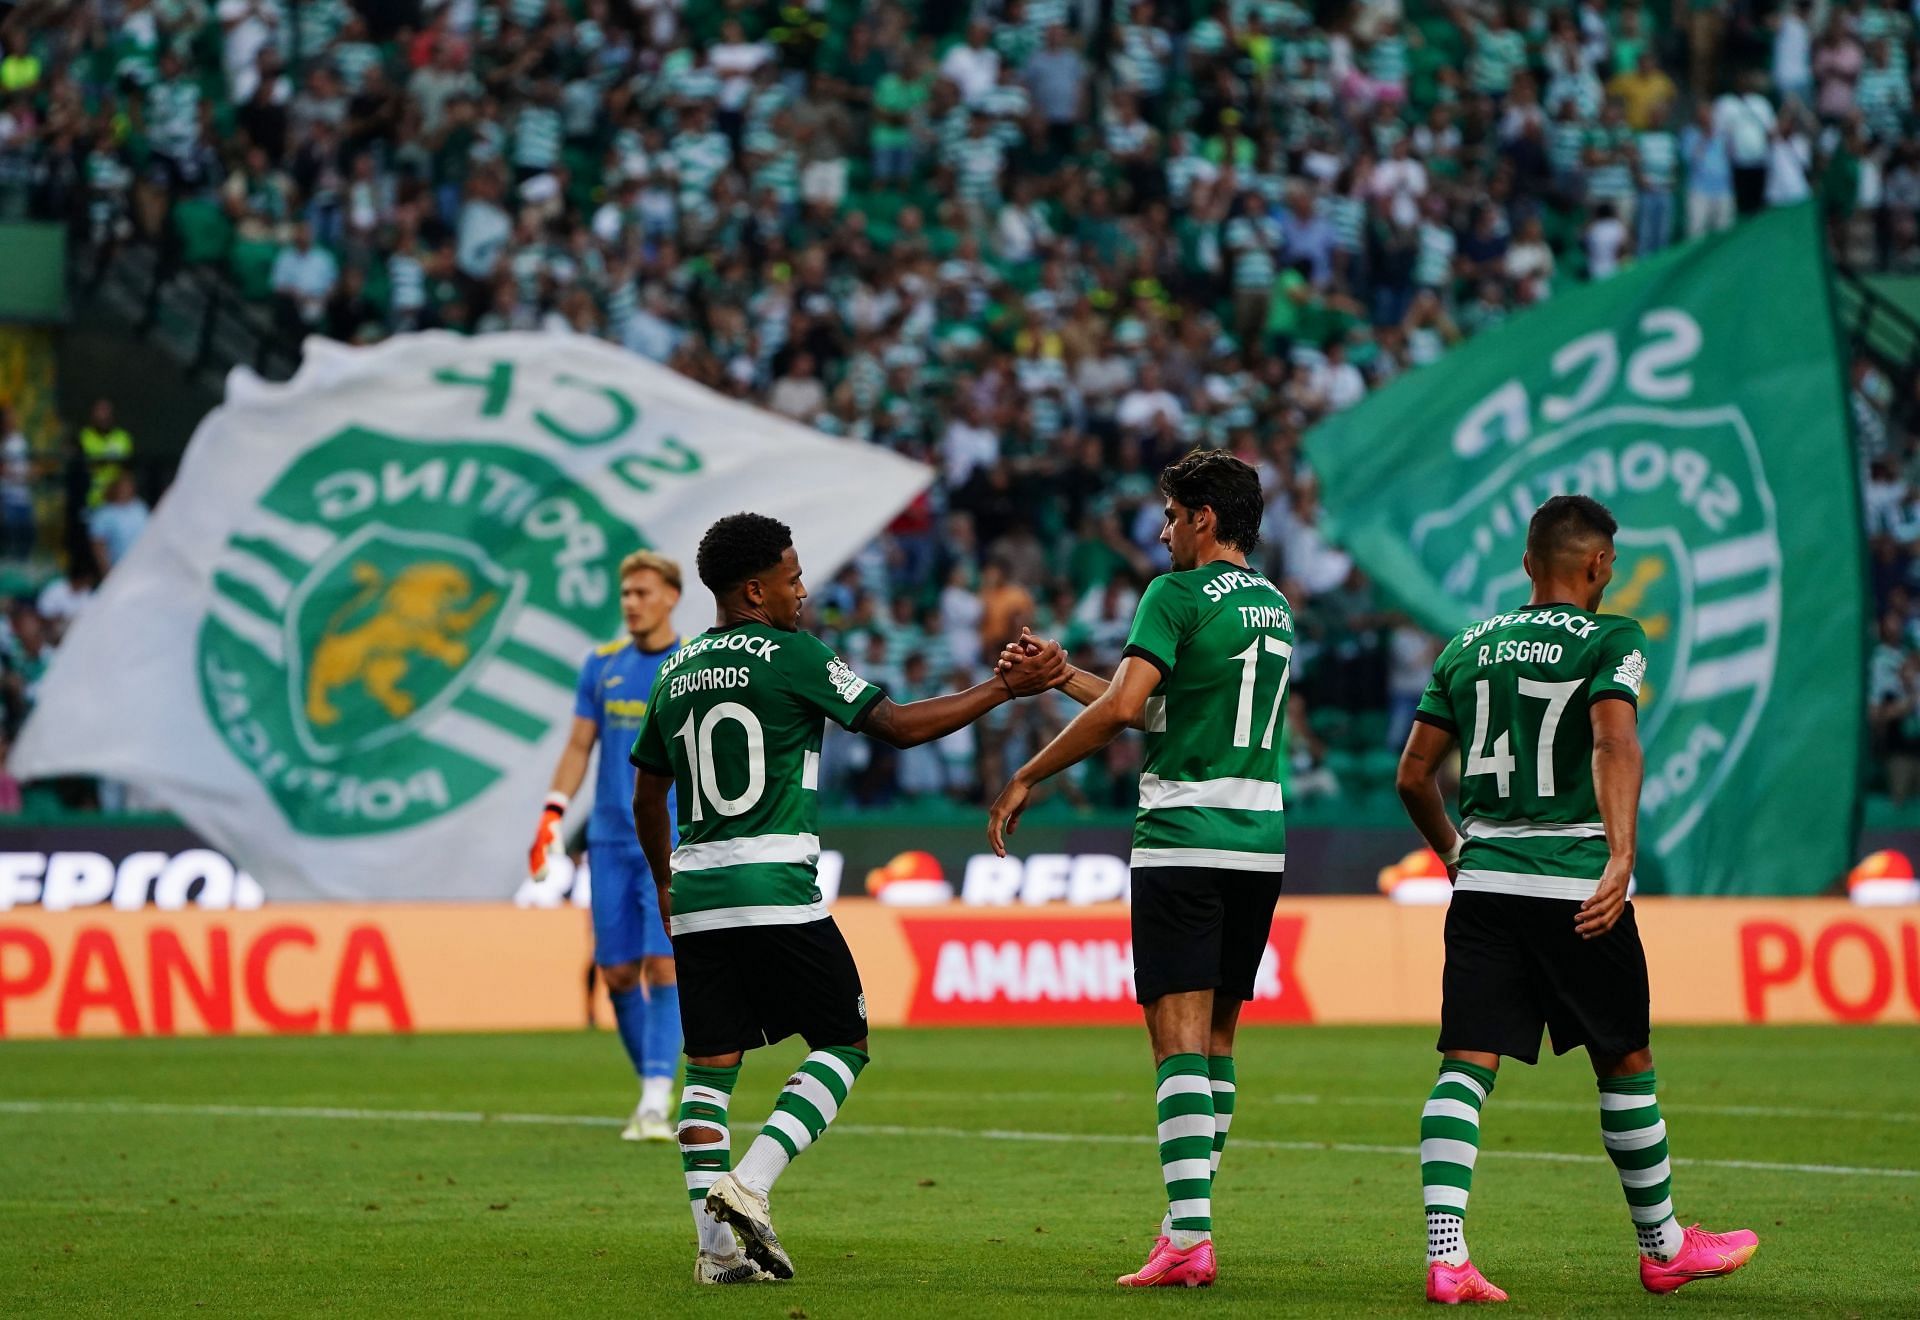 Sporting-Famalicão, 1-2 (resultado final) - CNN Portugal